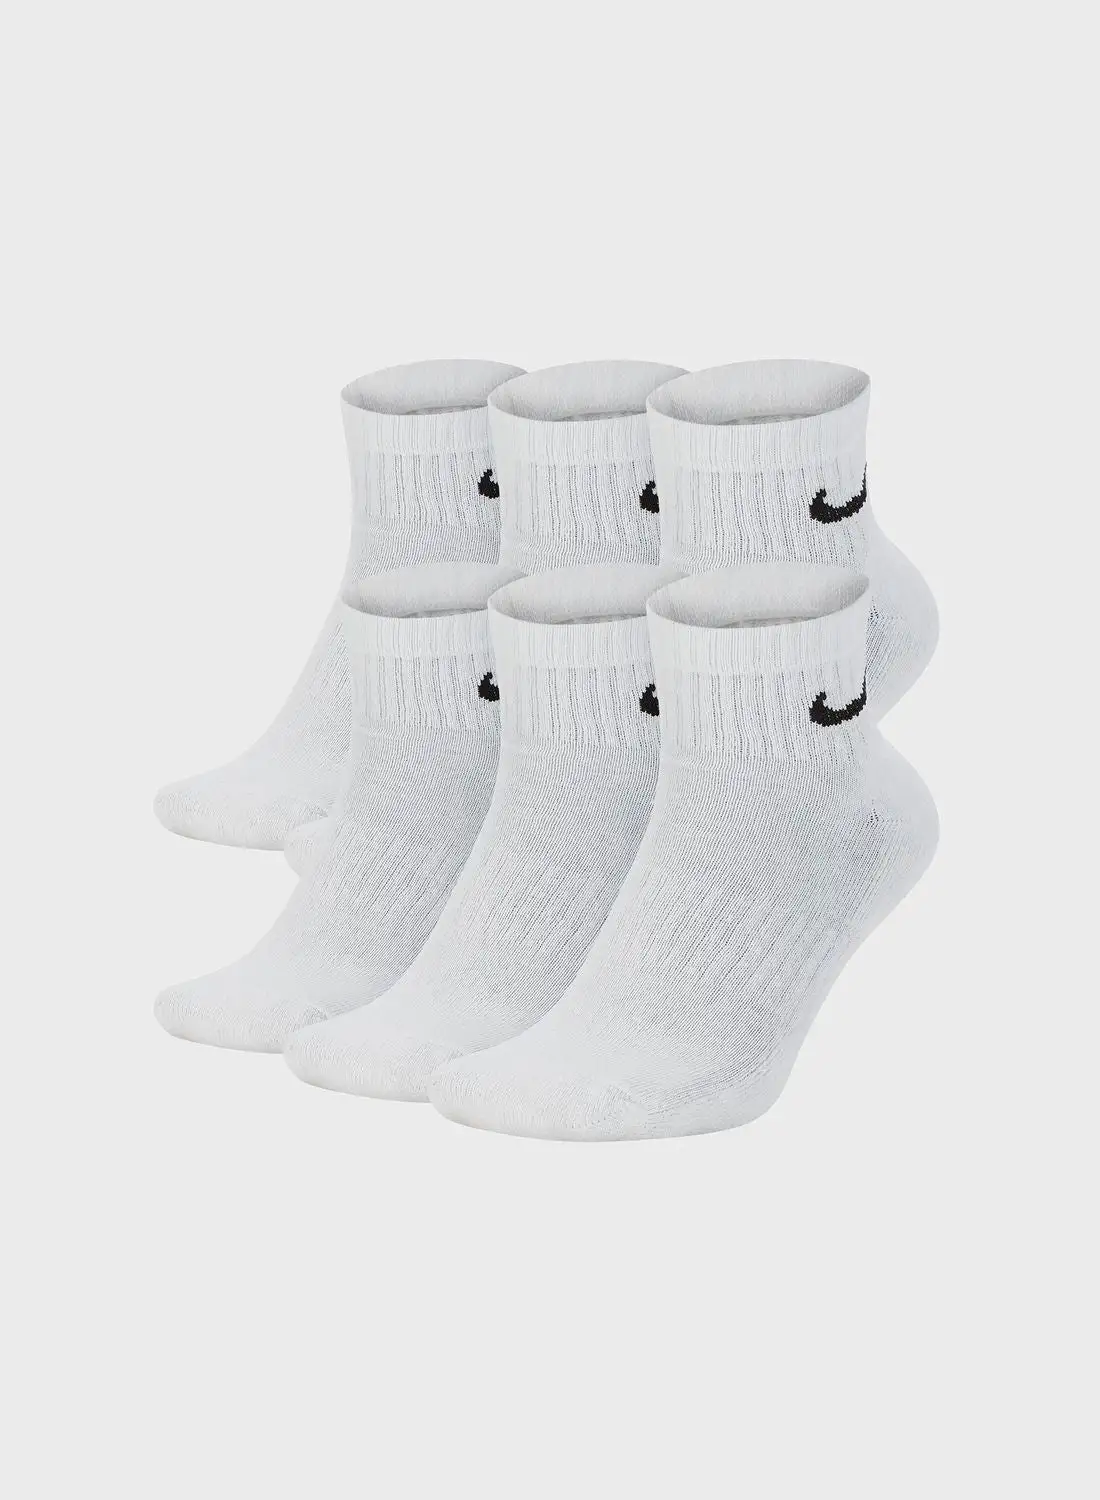 Nike 6 Pack Cushion Ankle Socks